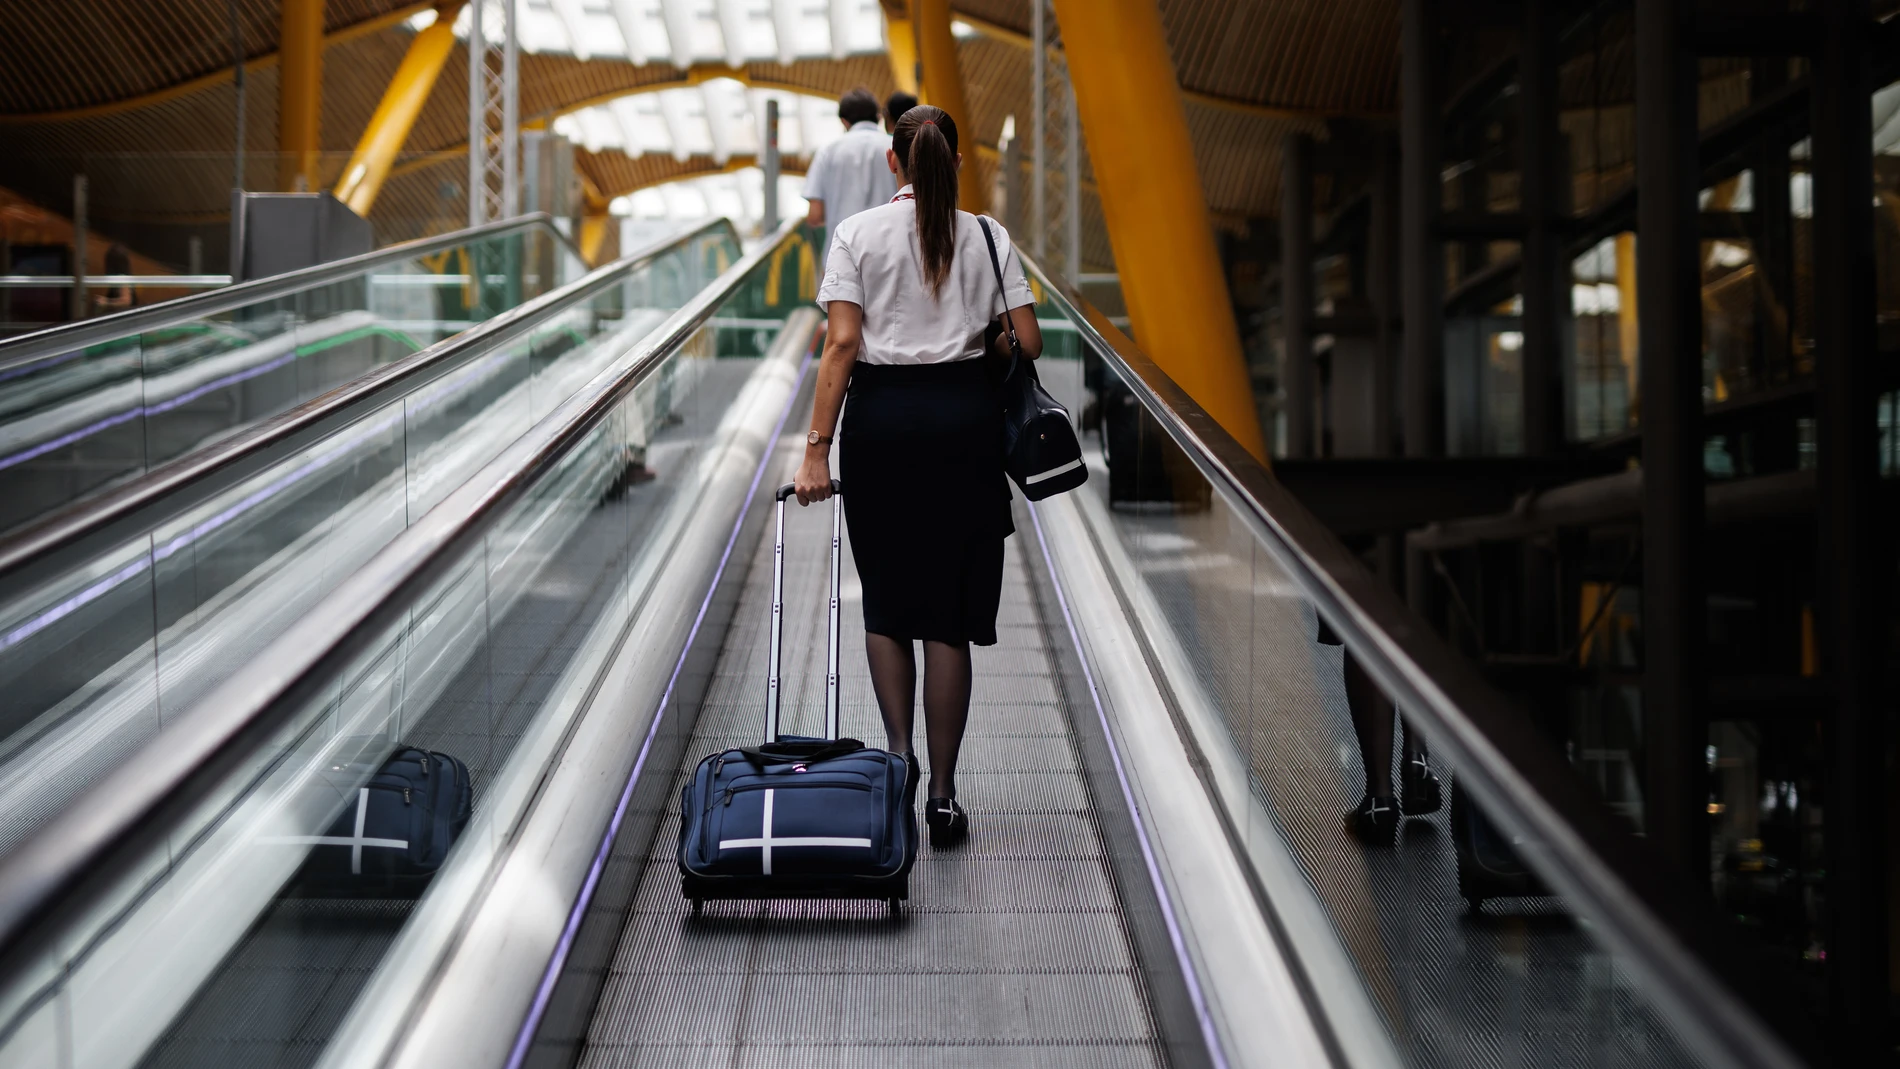 Economía/Turismo.- Las azafatas de vuelo denuncian a España ante Bruselas por discriminación laboral